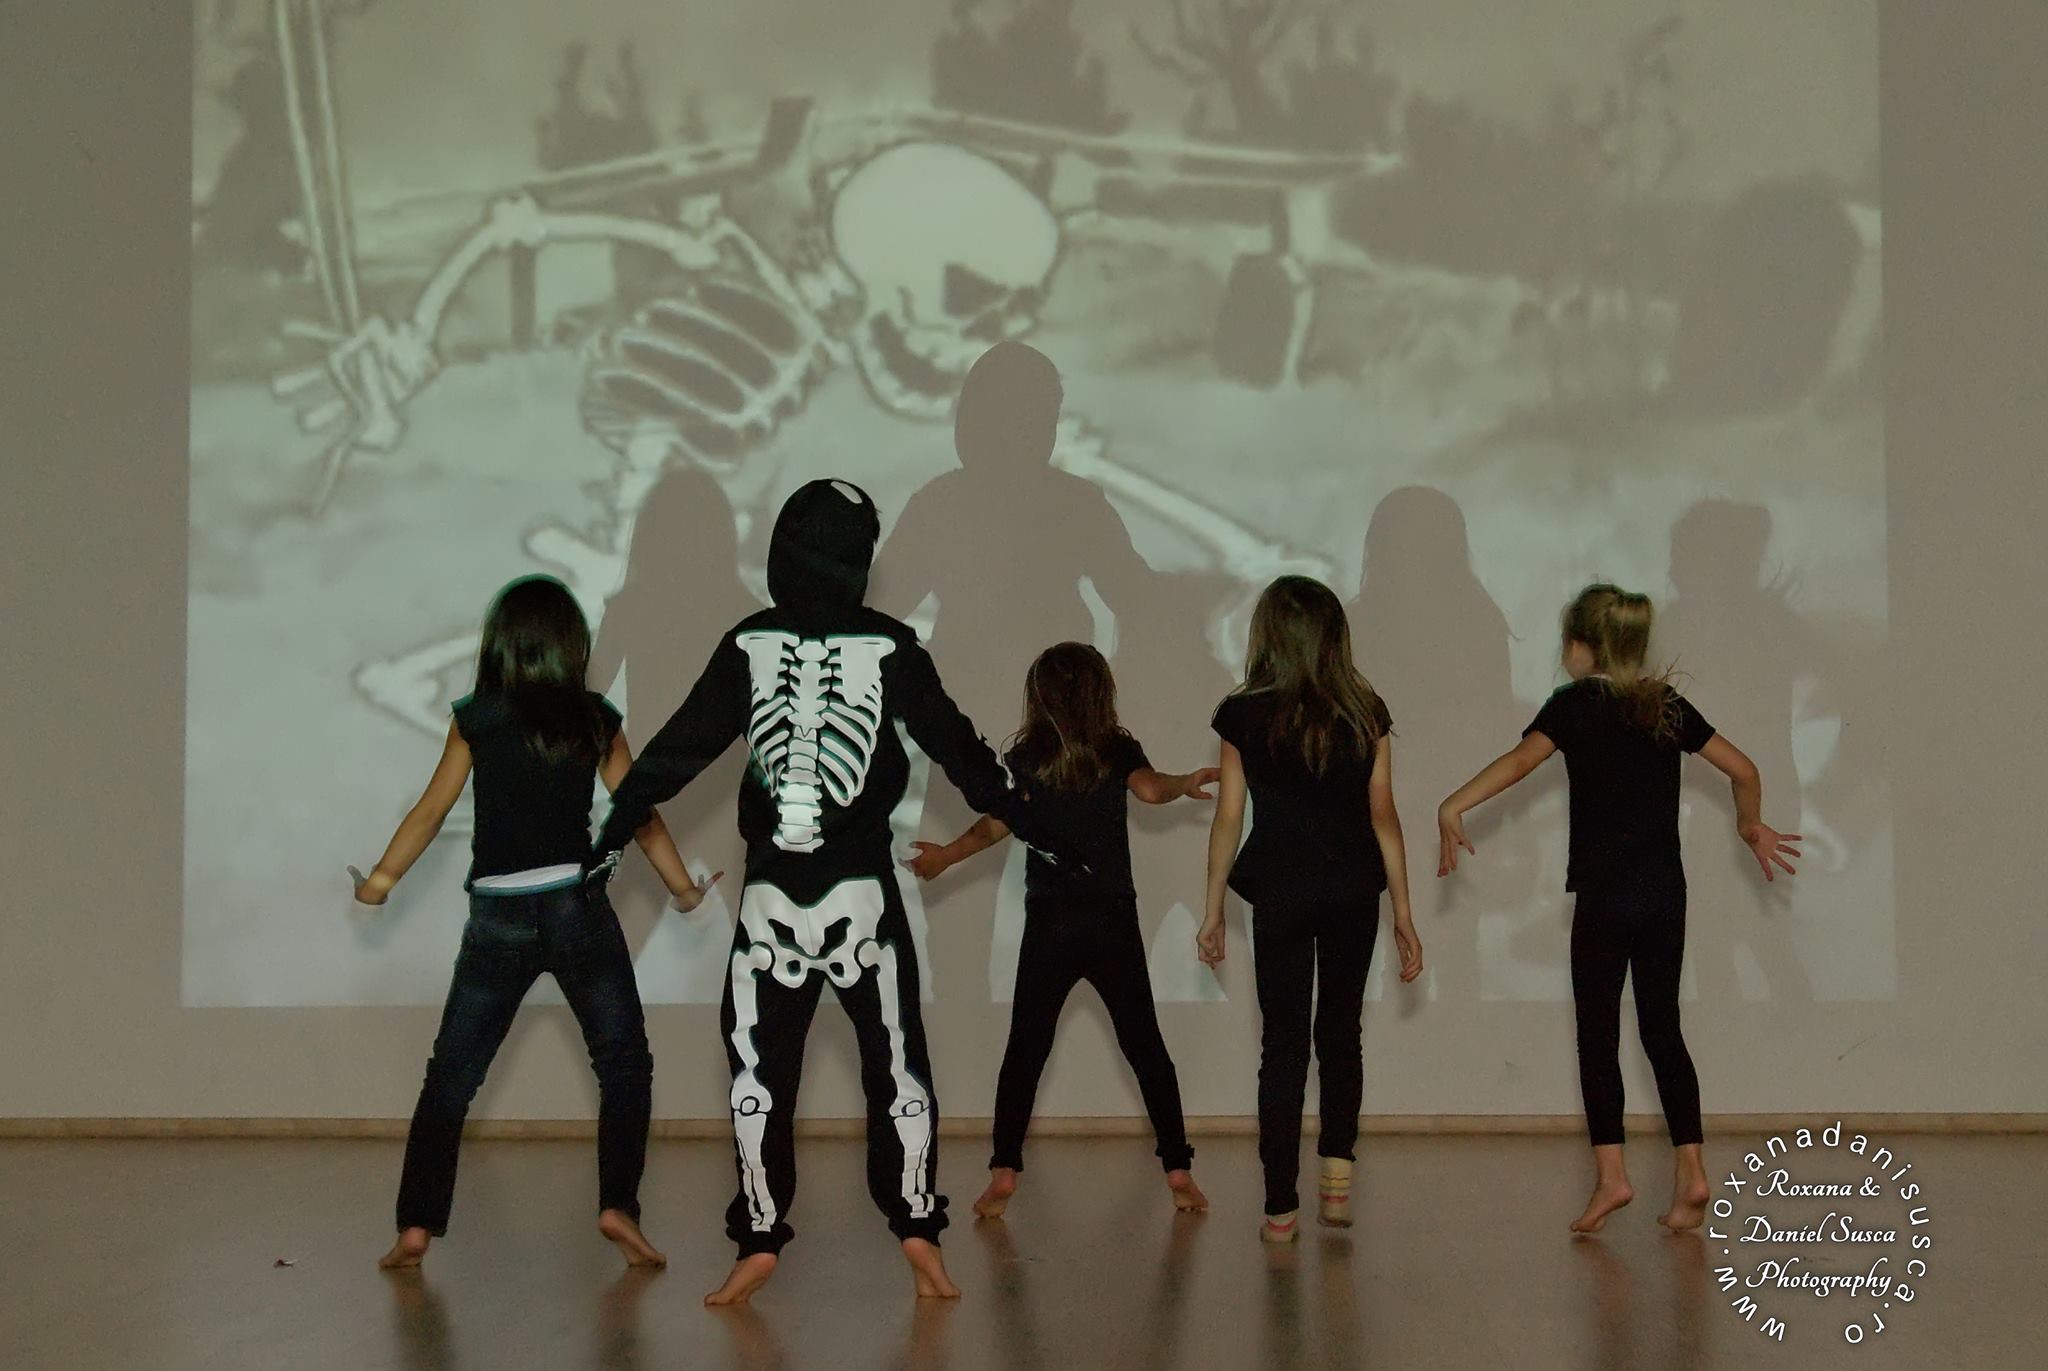 Fotografie din spectacolul  „Ghost", în coregrafia Colette Sadler. Spectacol realizat în urma unui atelier pentru copii găzduit în cadrul secțiunii Stage & Playground - eXplore dance festival #9, 2014.